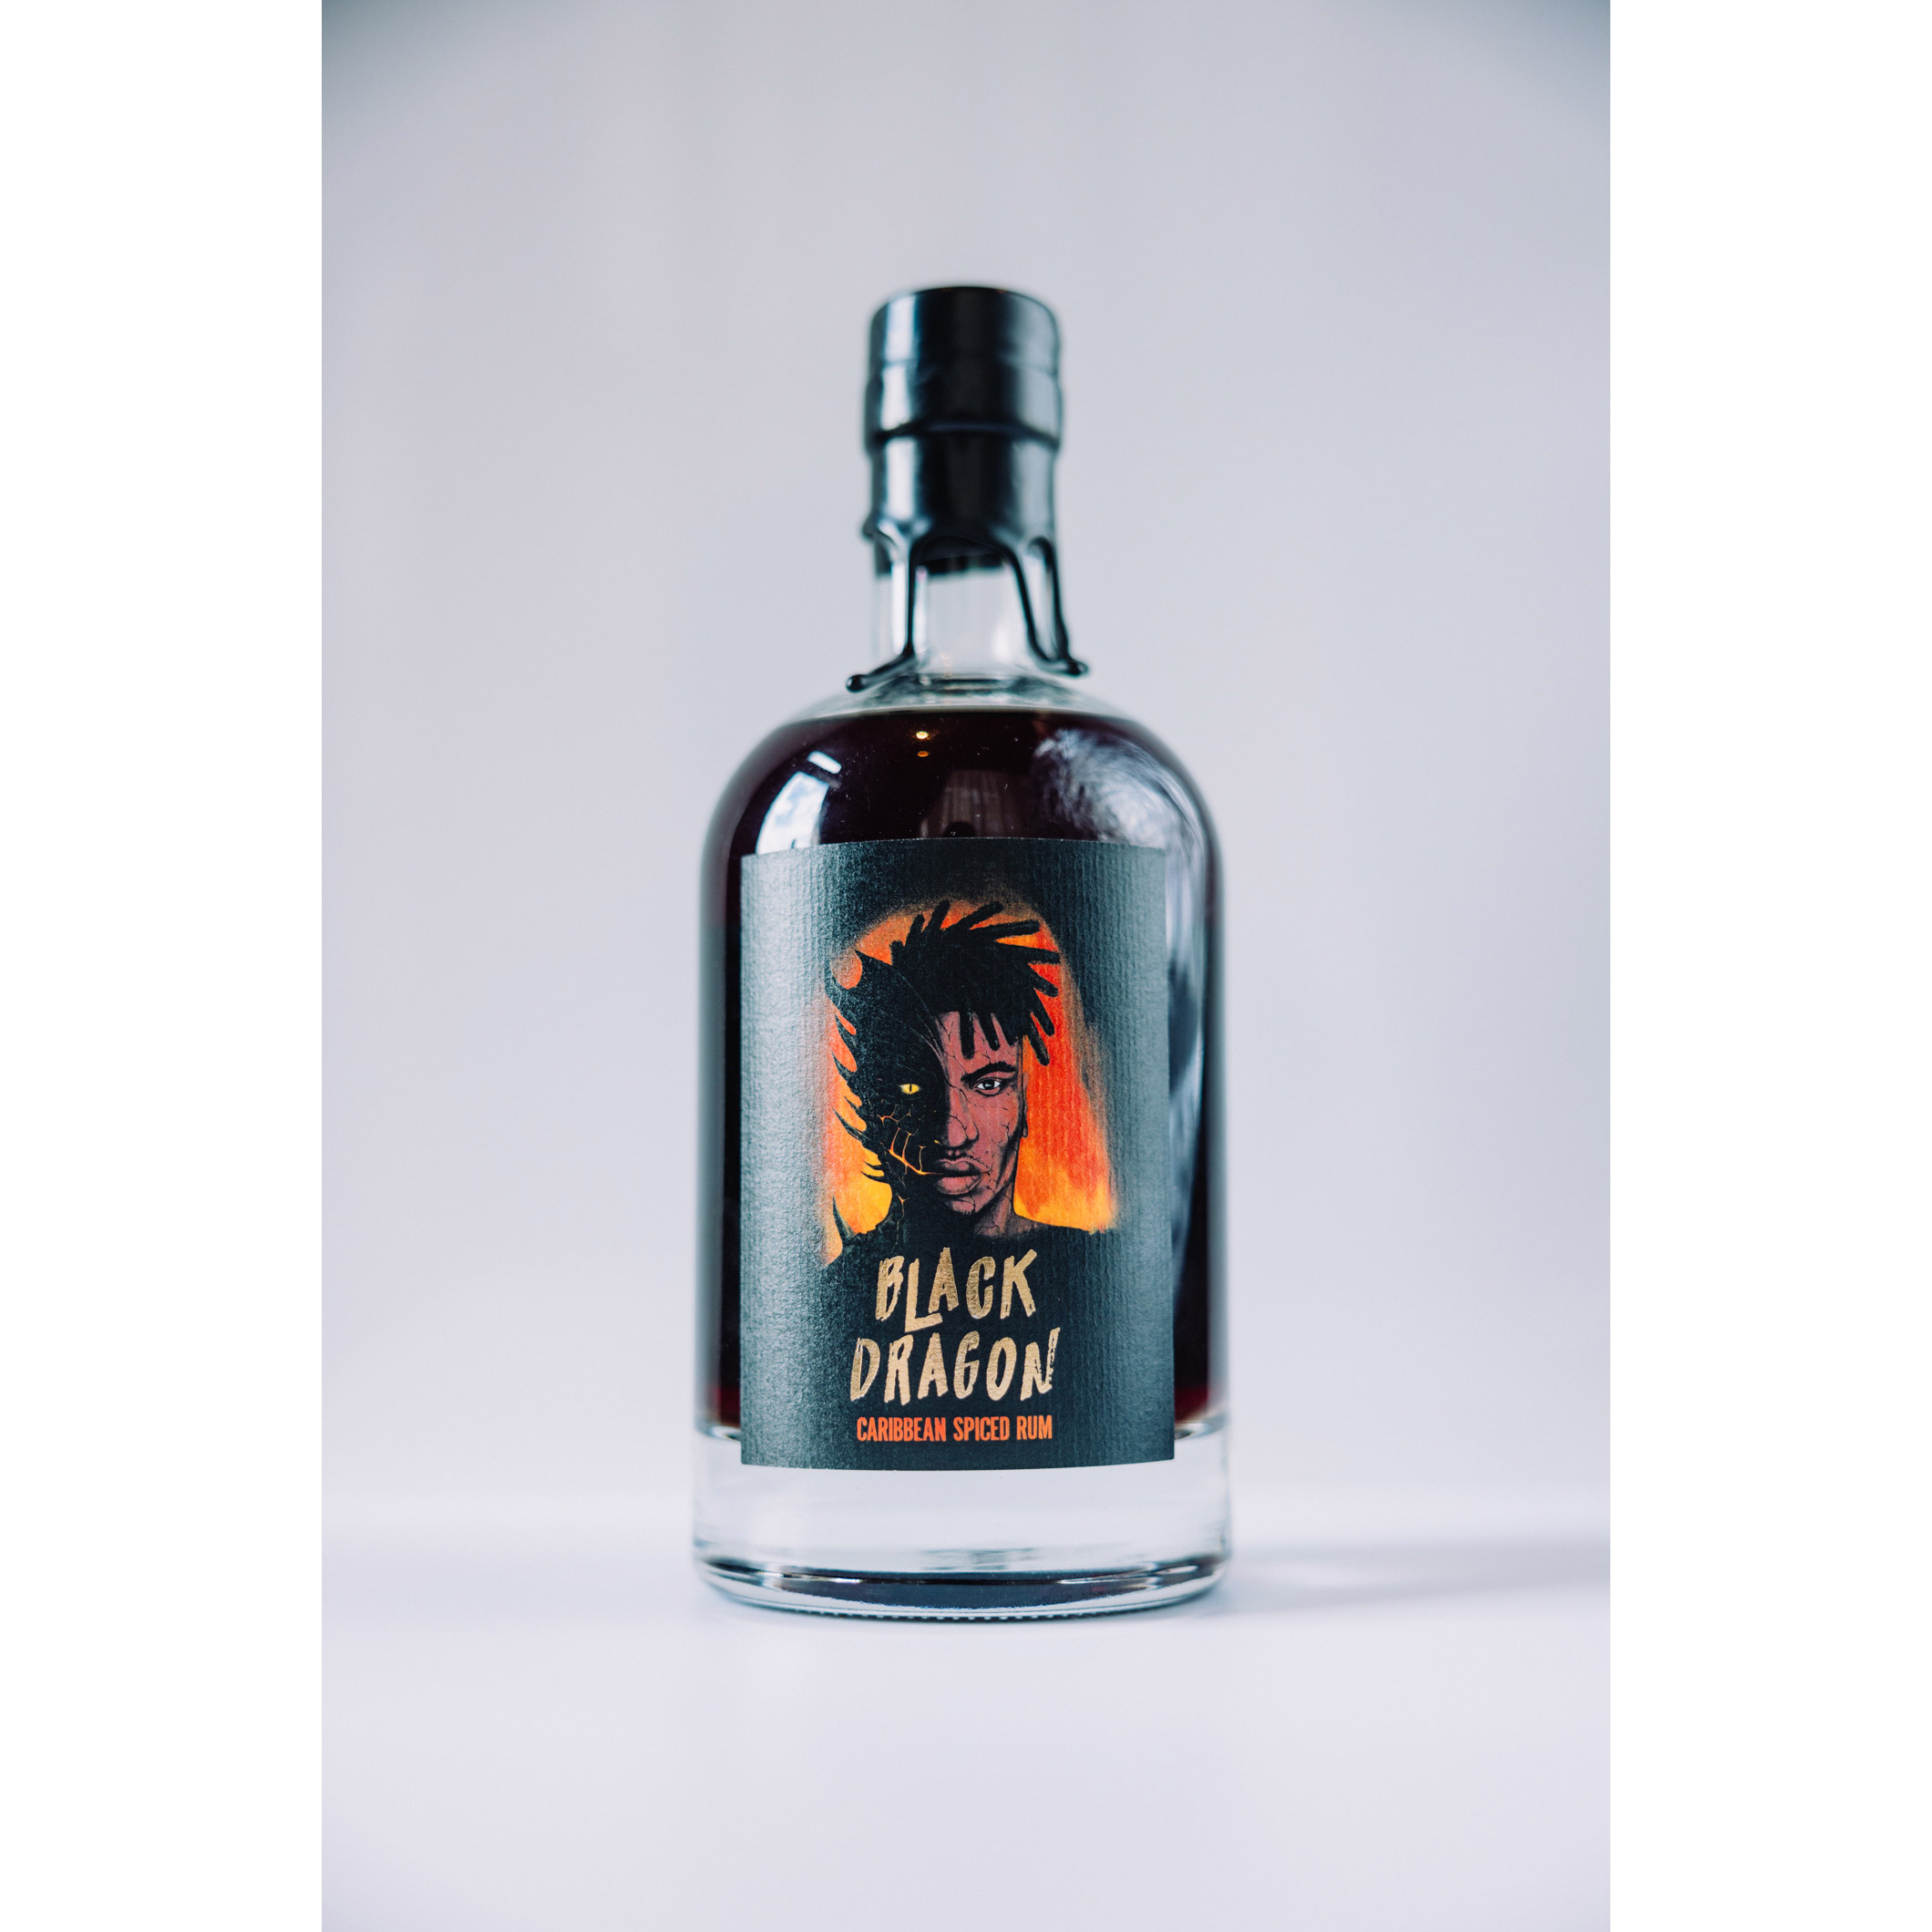 Black Dragon Caribbean Spiced Rum